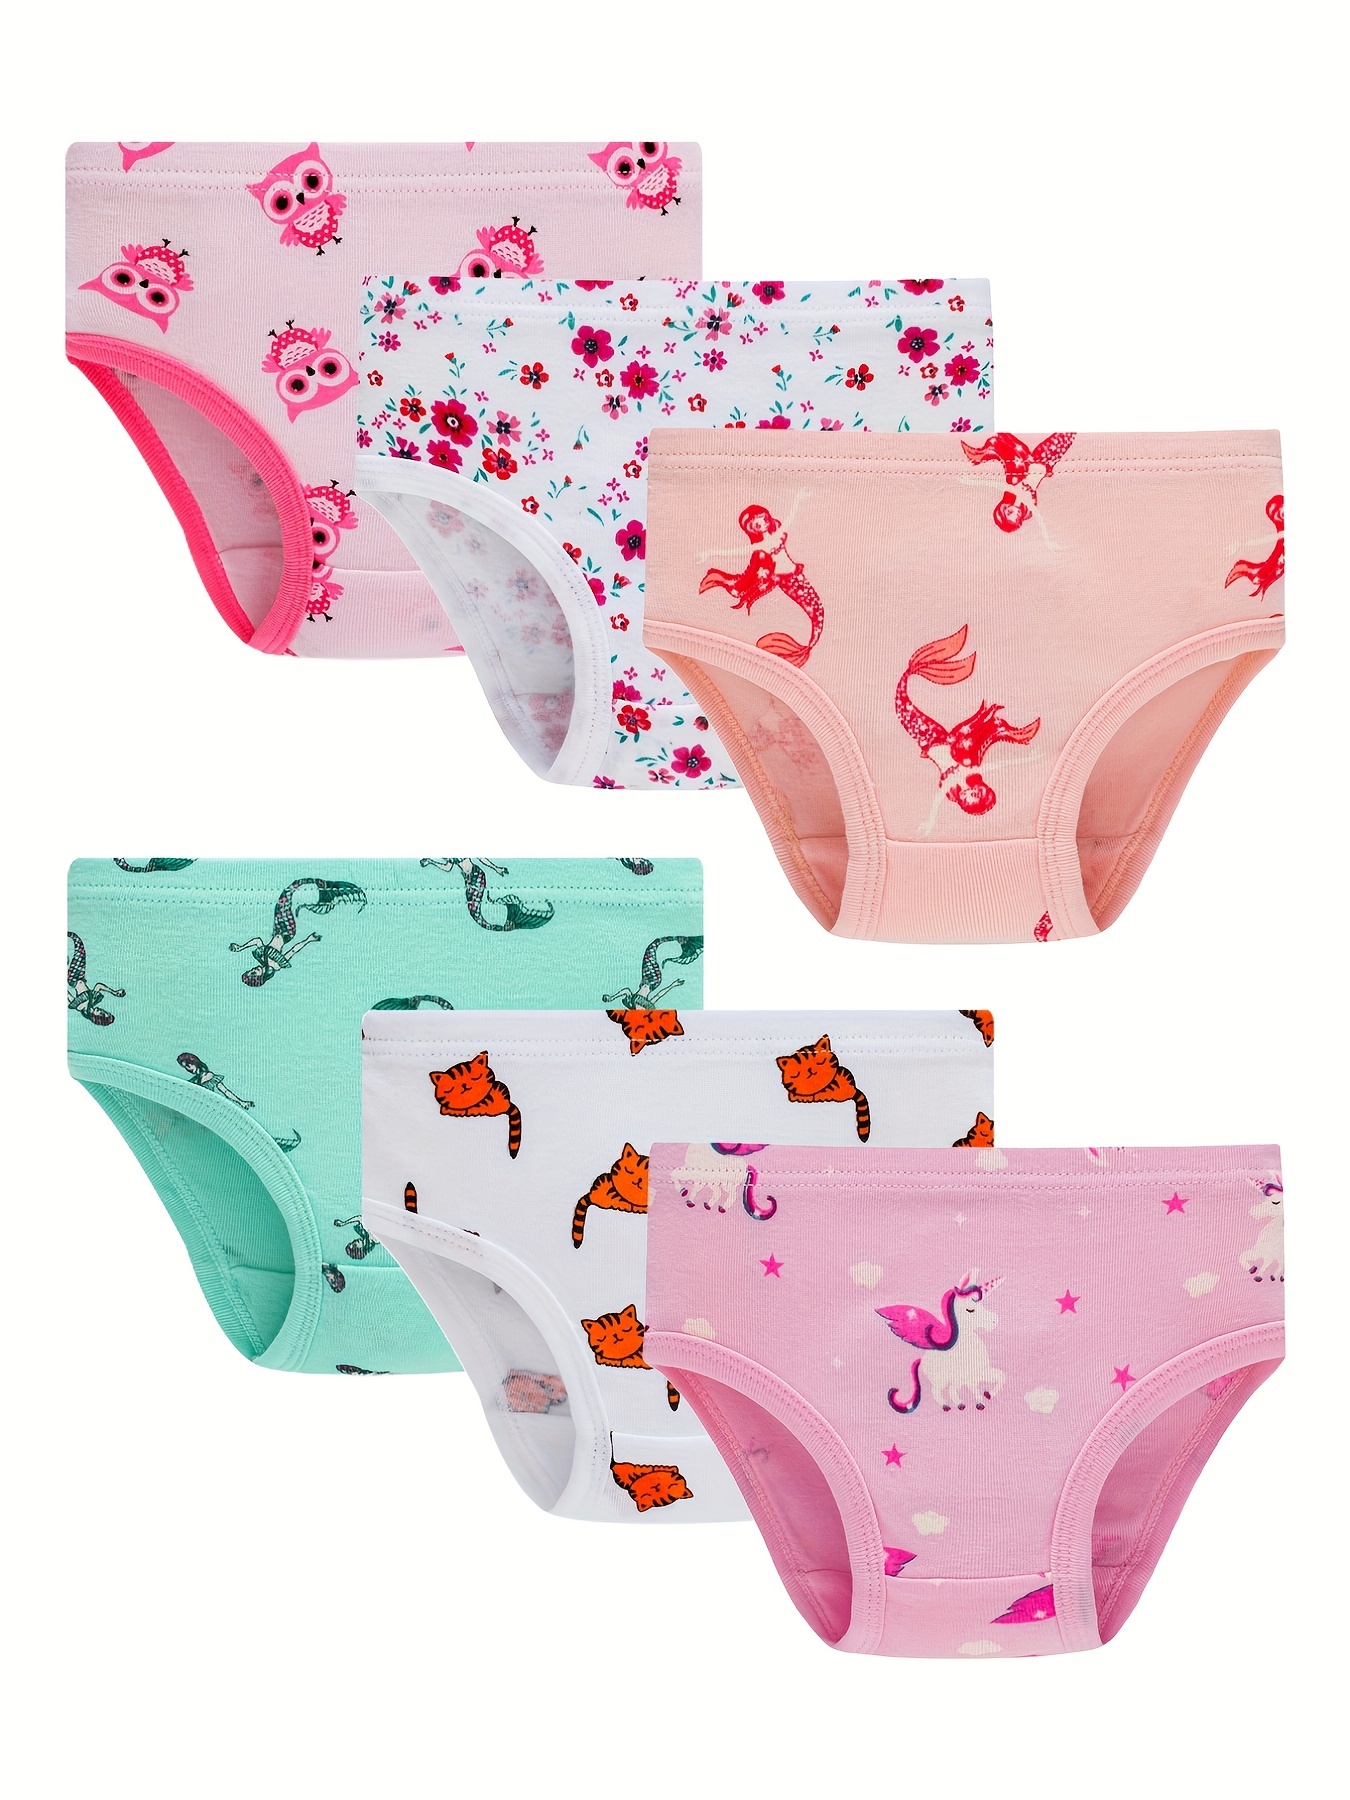 Baby Soft Cotton Panties Little Girls'Briefs Toddler Underwear